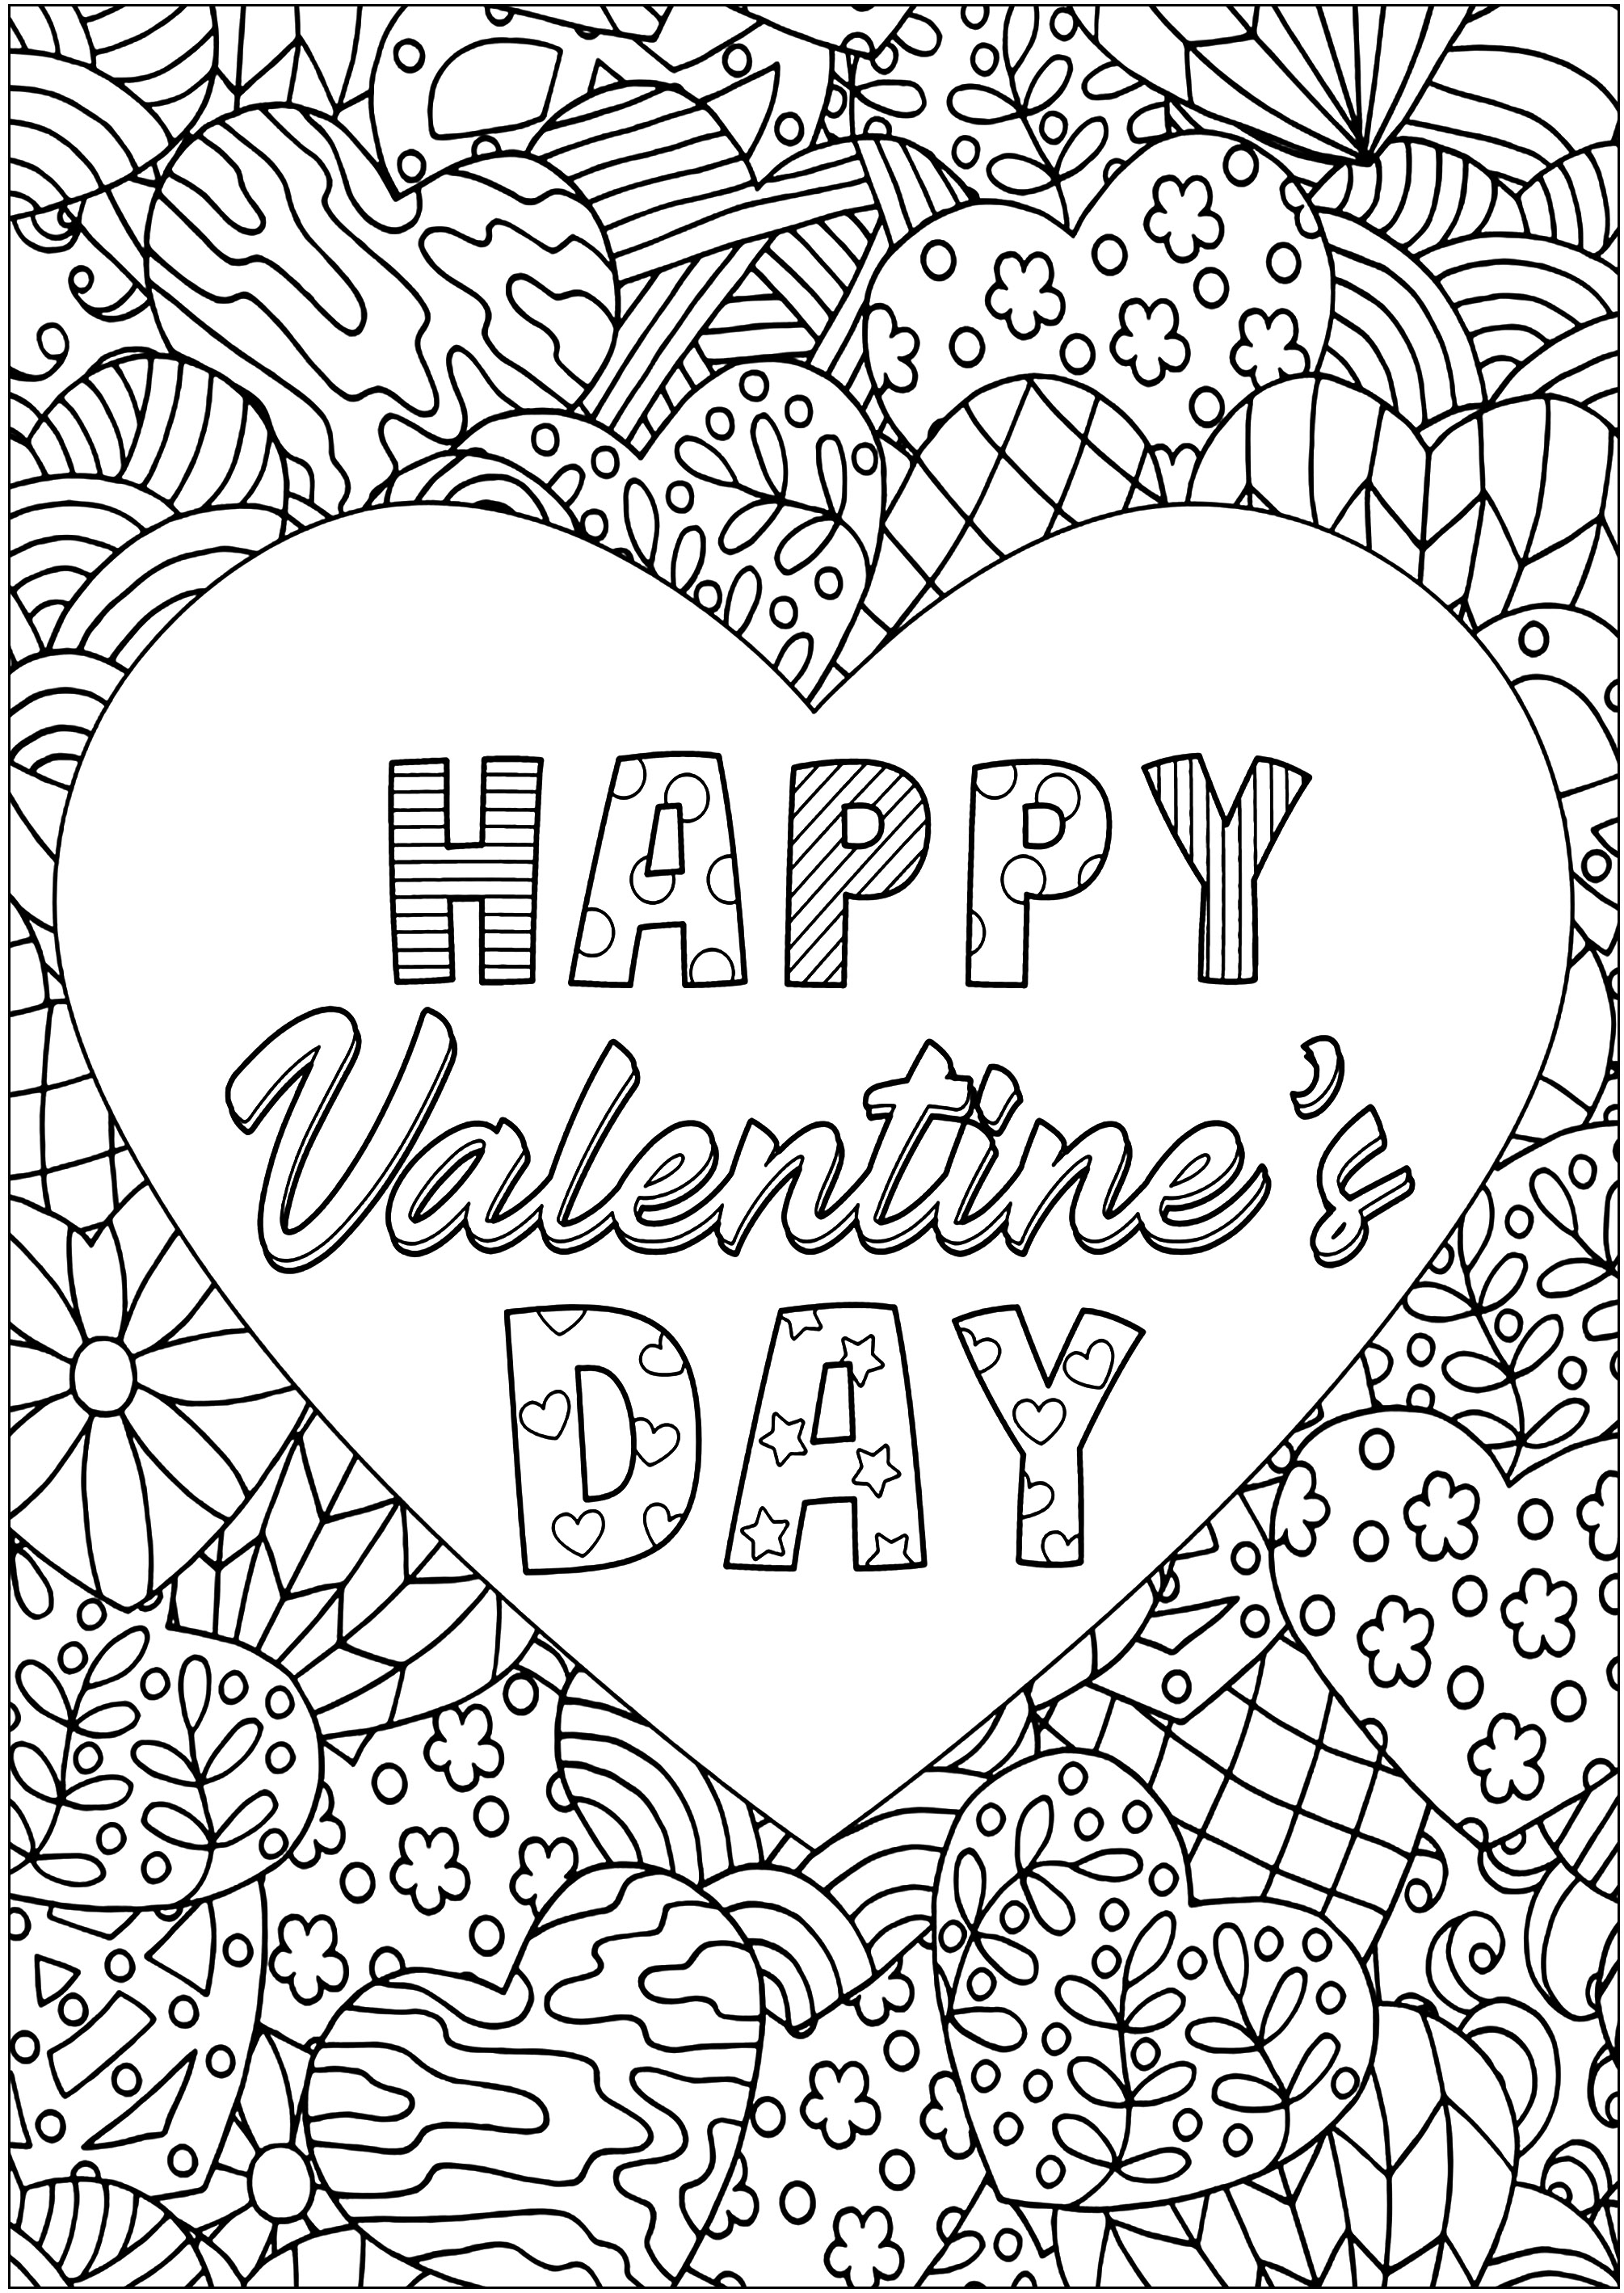 Corazón de San Valentín con diseños intrincados. Corazones estampados rodean un corazón grande con el texto 'FELIZ DÍA DE SAN VALENTÍN'.